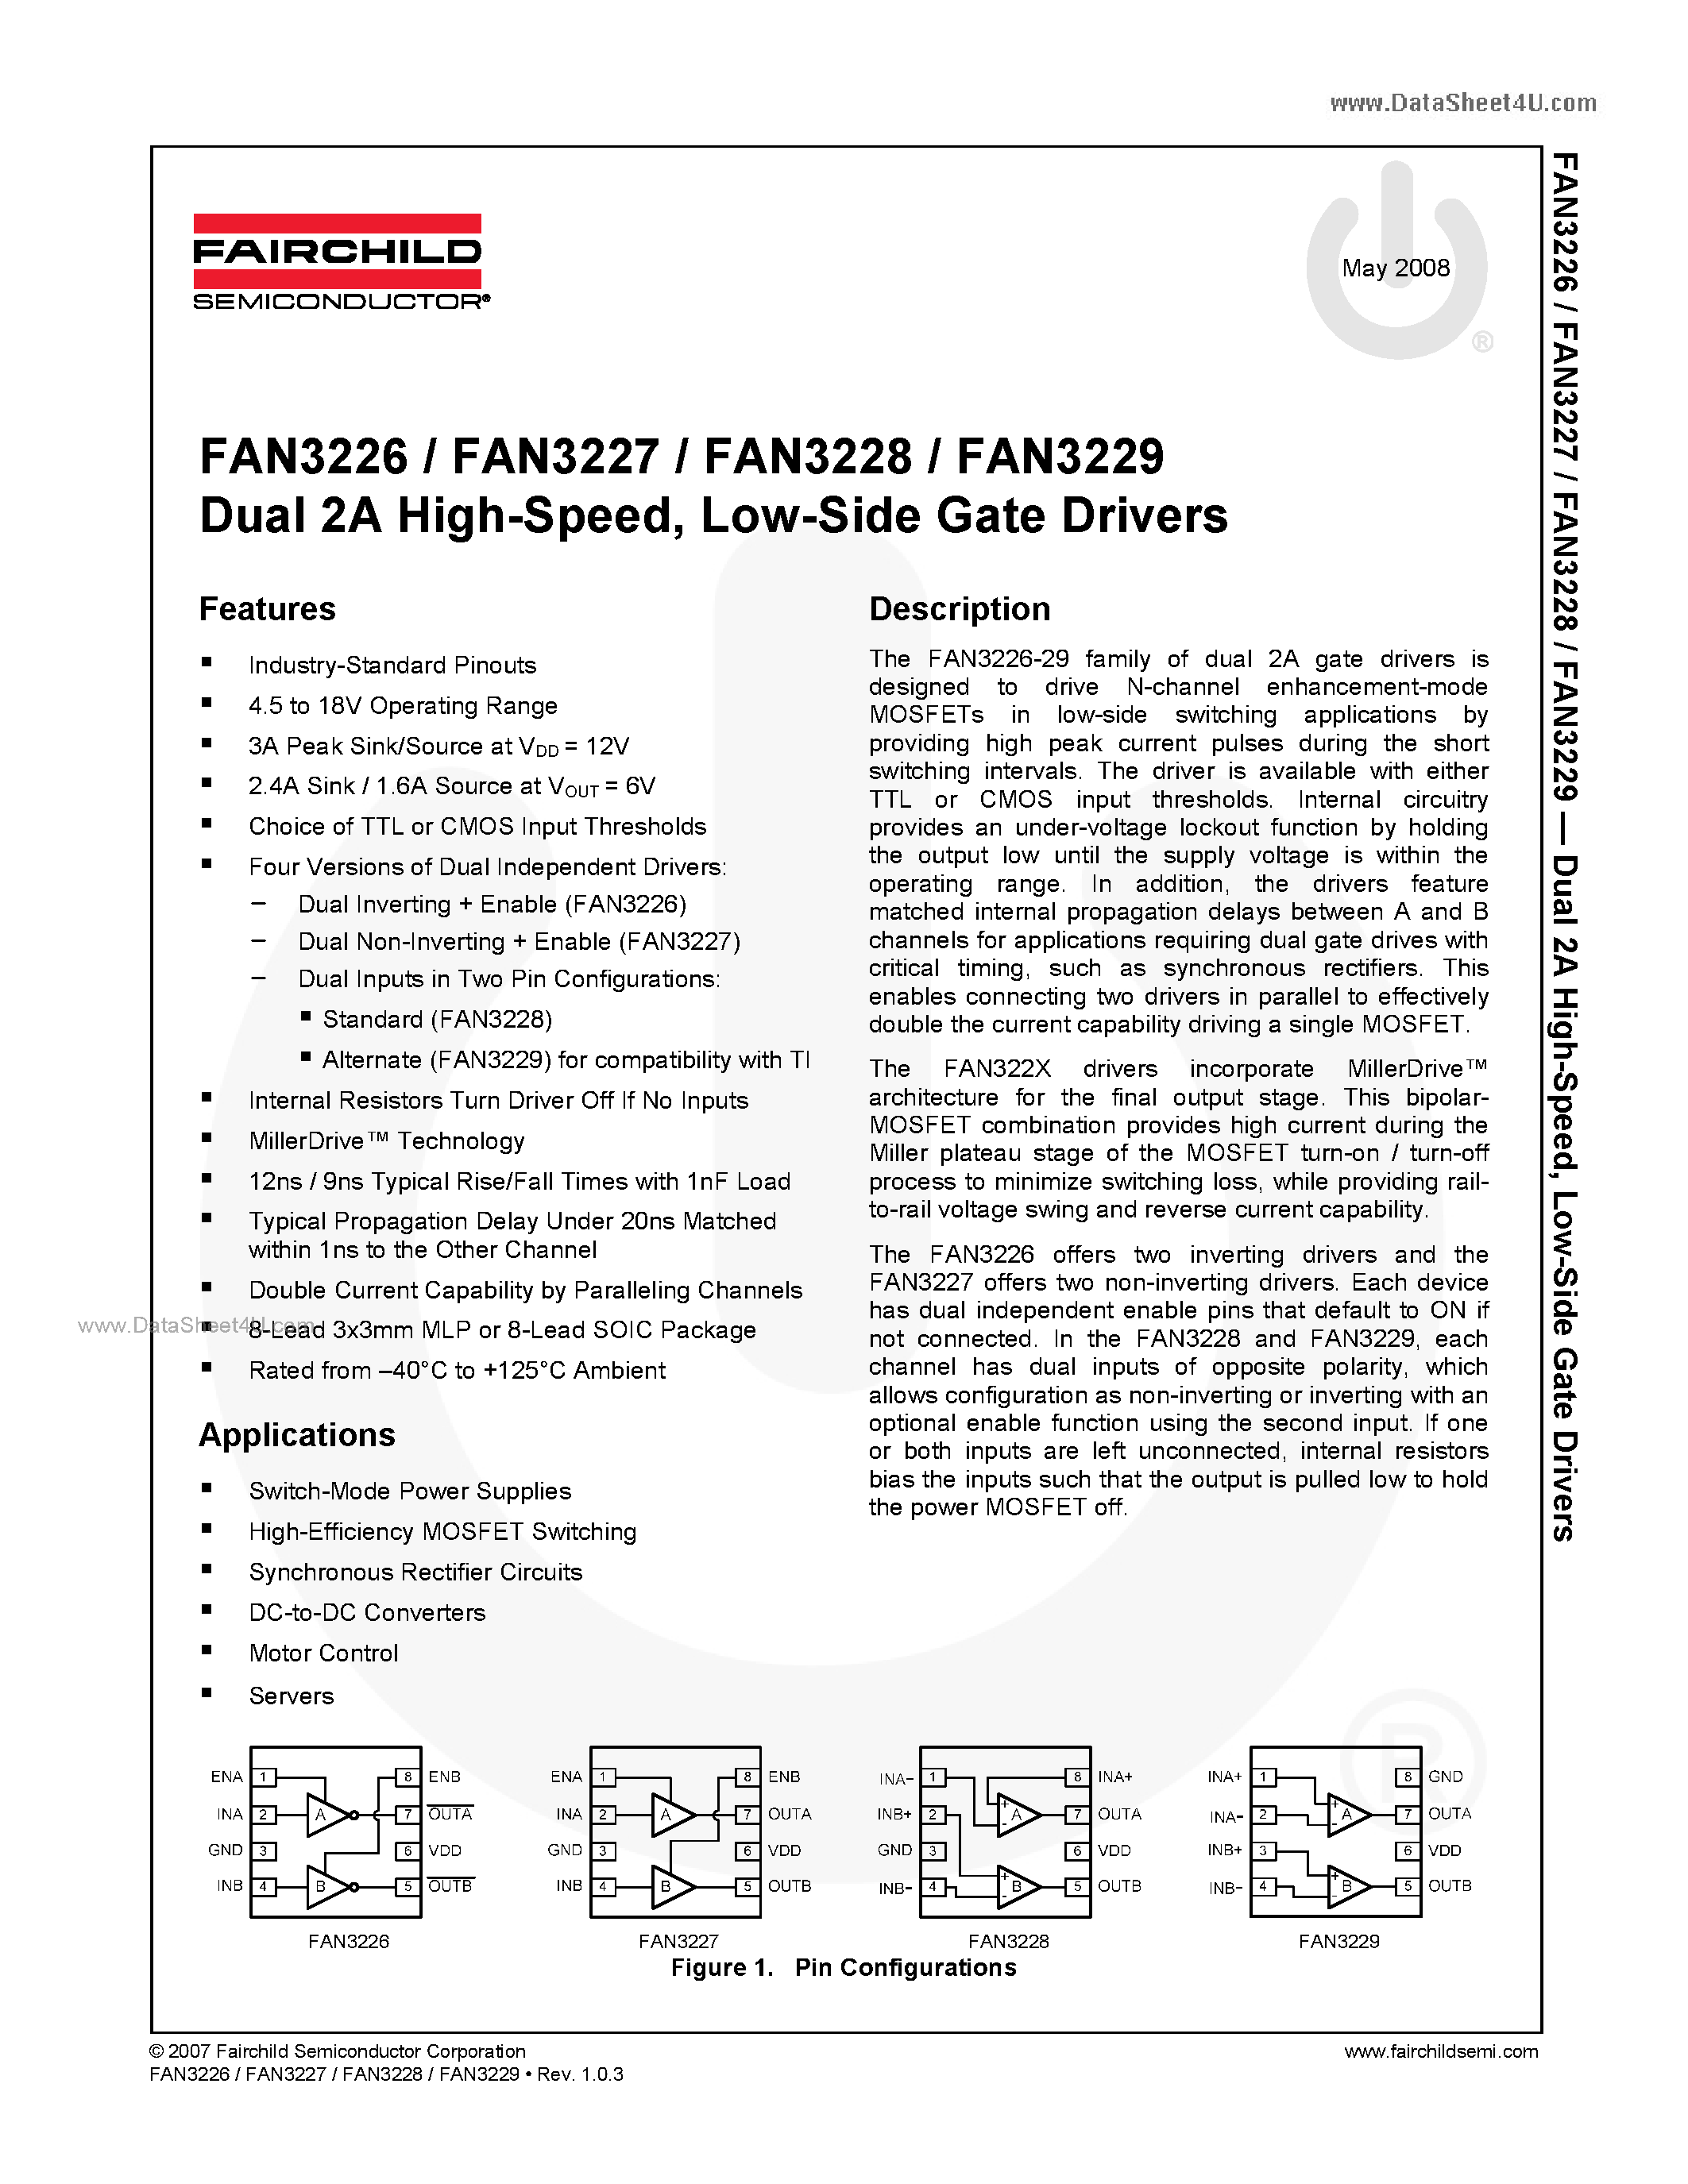 Даташит FAN3226 - (FAN3226 - FAN3229) Low-Side Gate Drivers страница 1